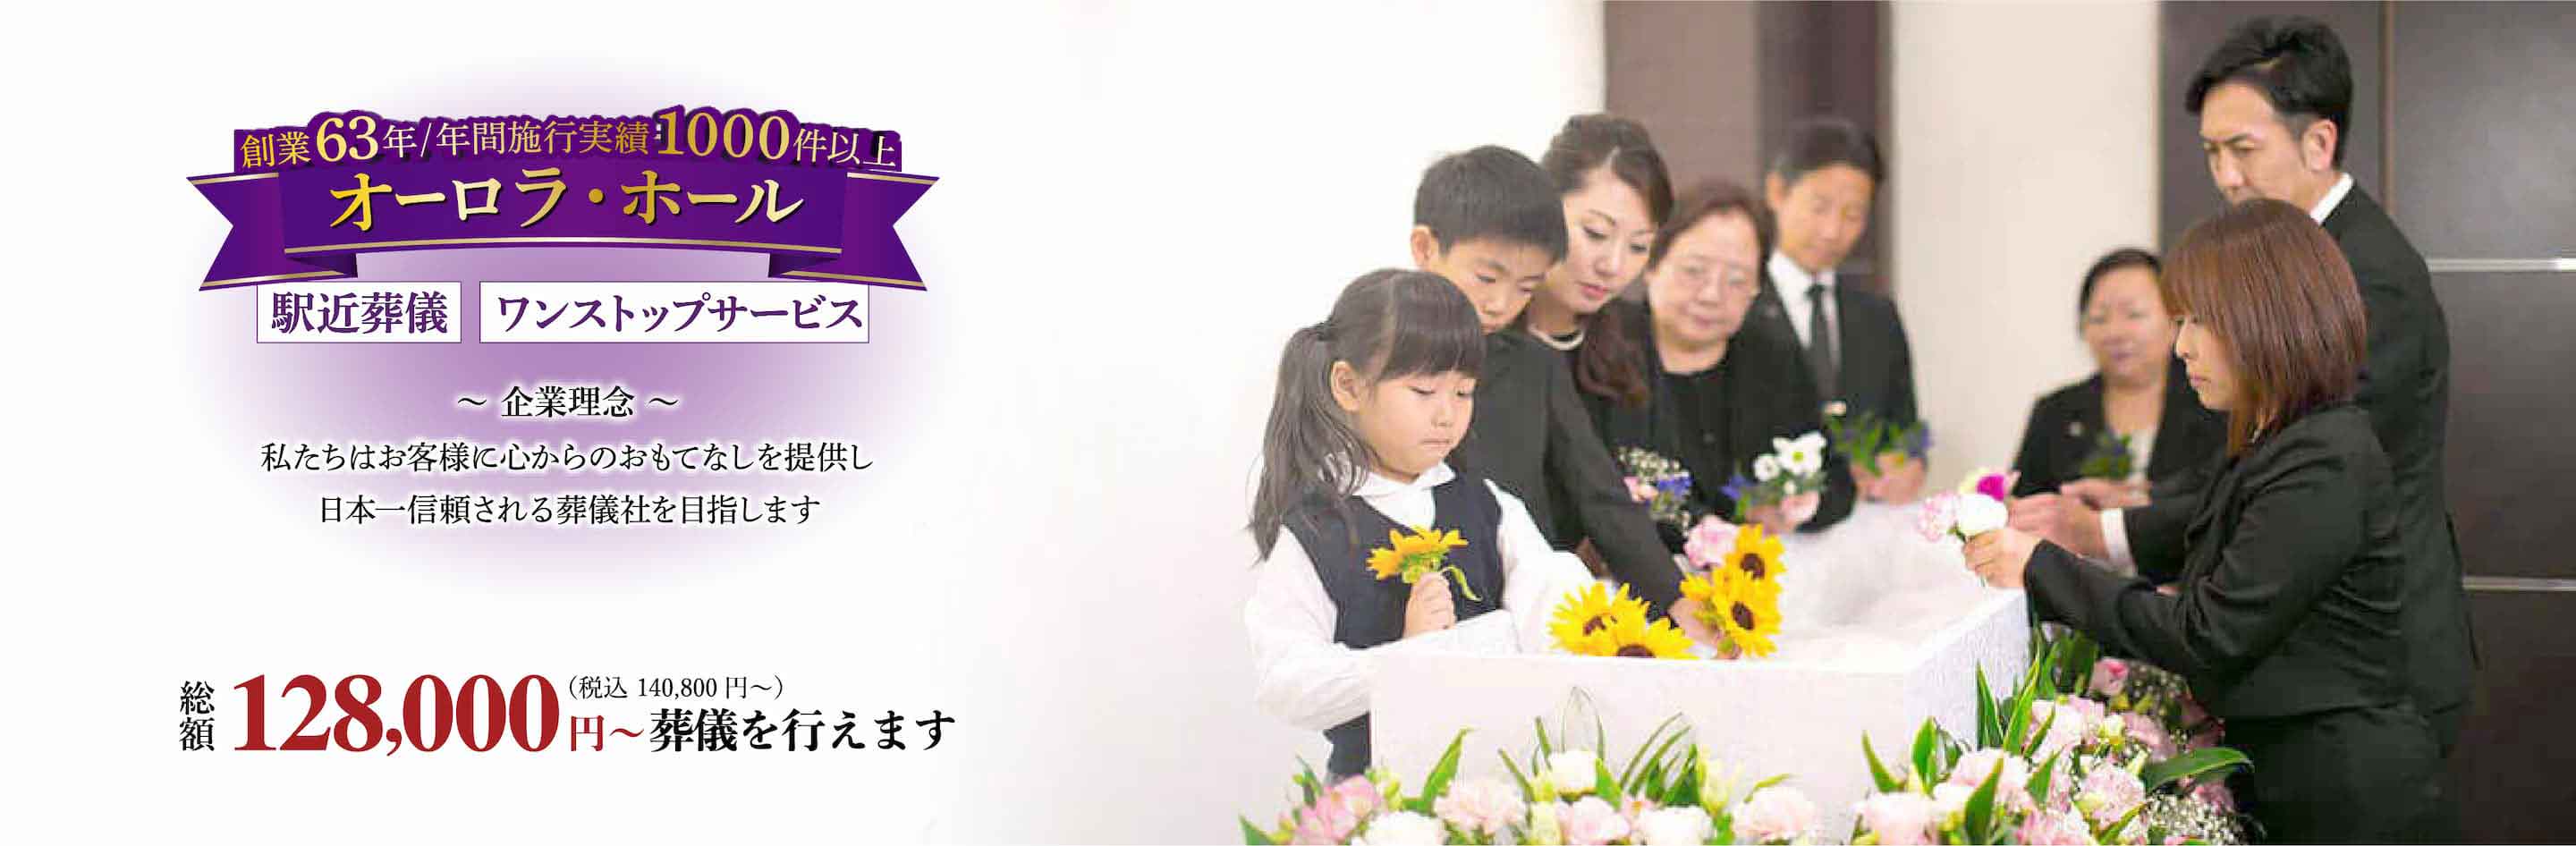 私たち博愛社はお客様に心からのおもてなしを提供し日本一信頼される葬儀社を目指します